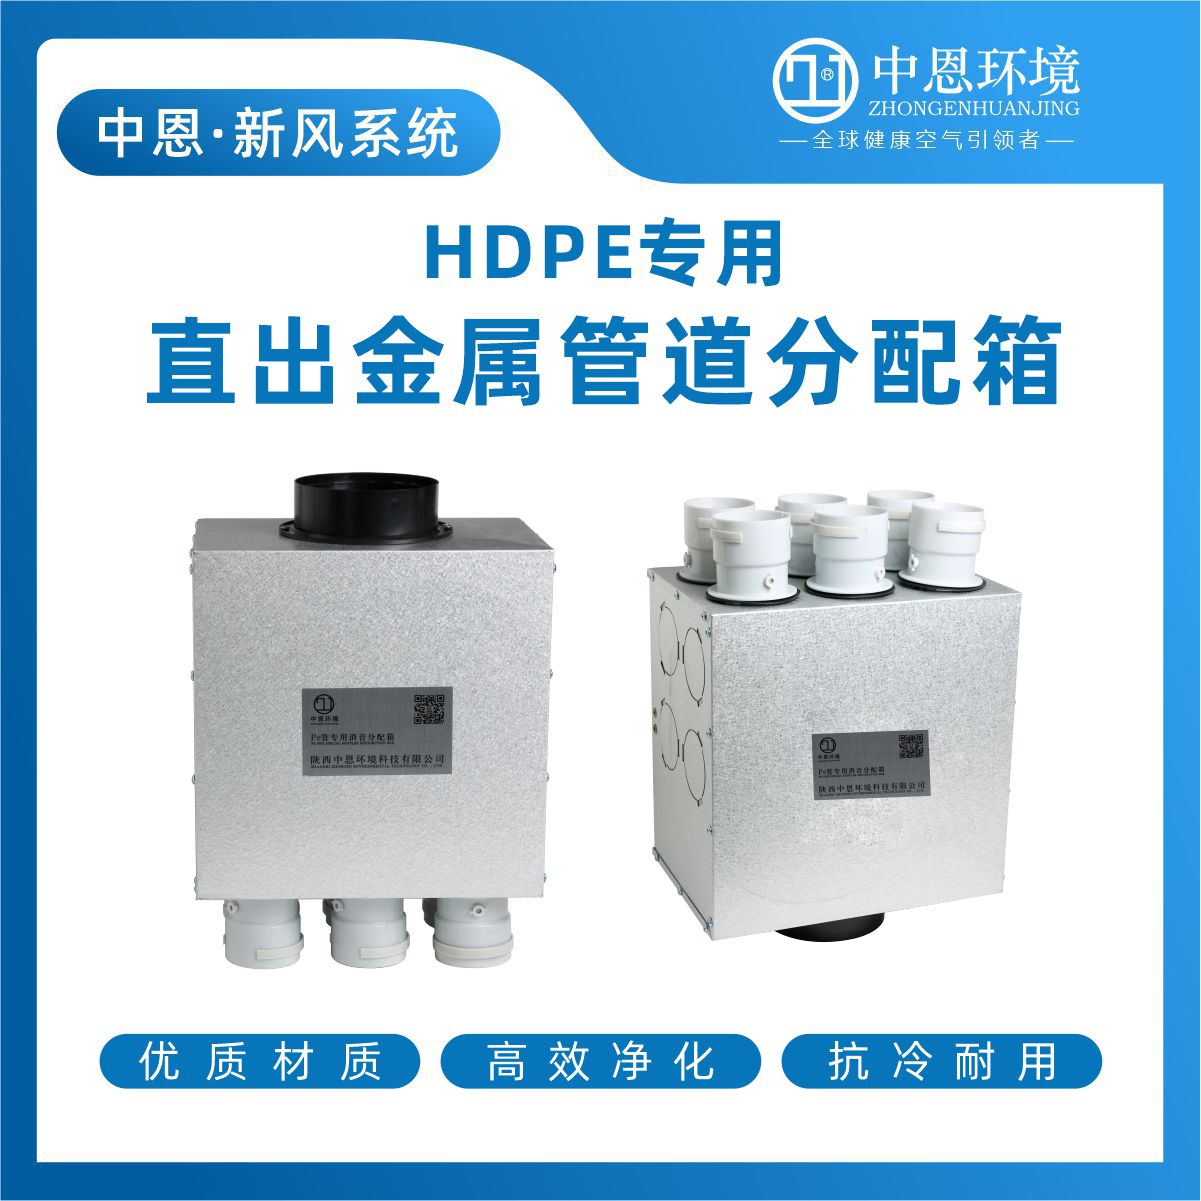 陕西中恩HDPE直出金属管道分配箱价格 分配箱生产厂家图片